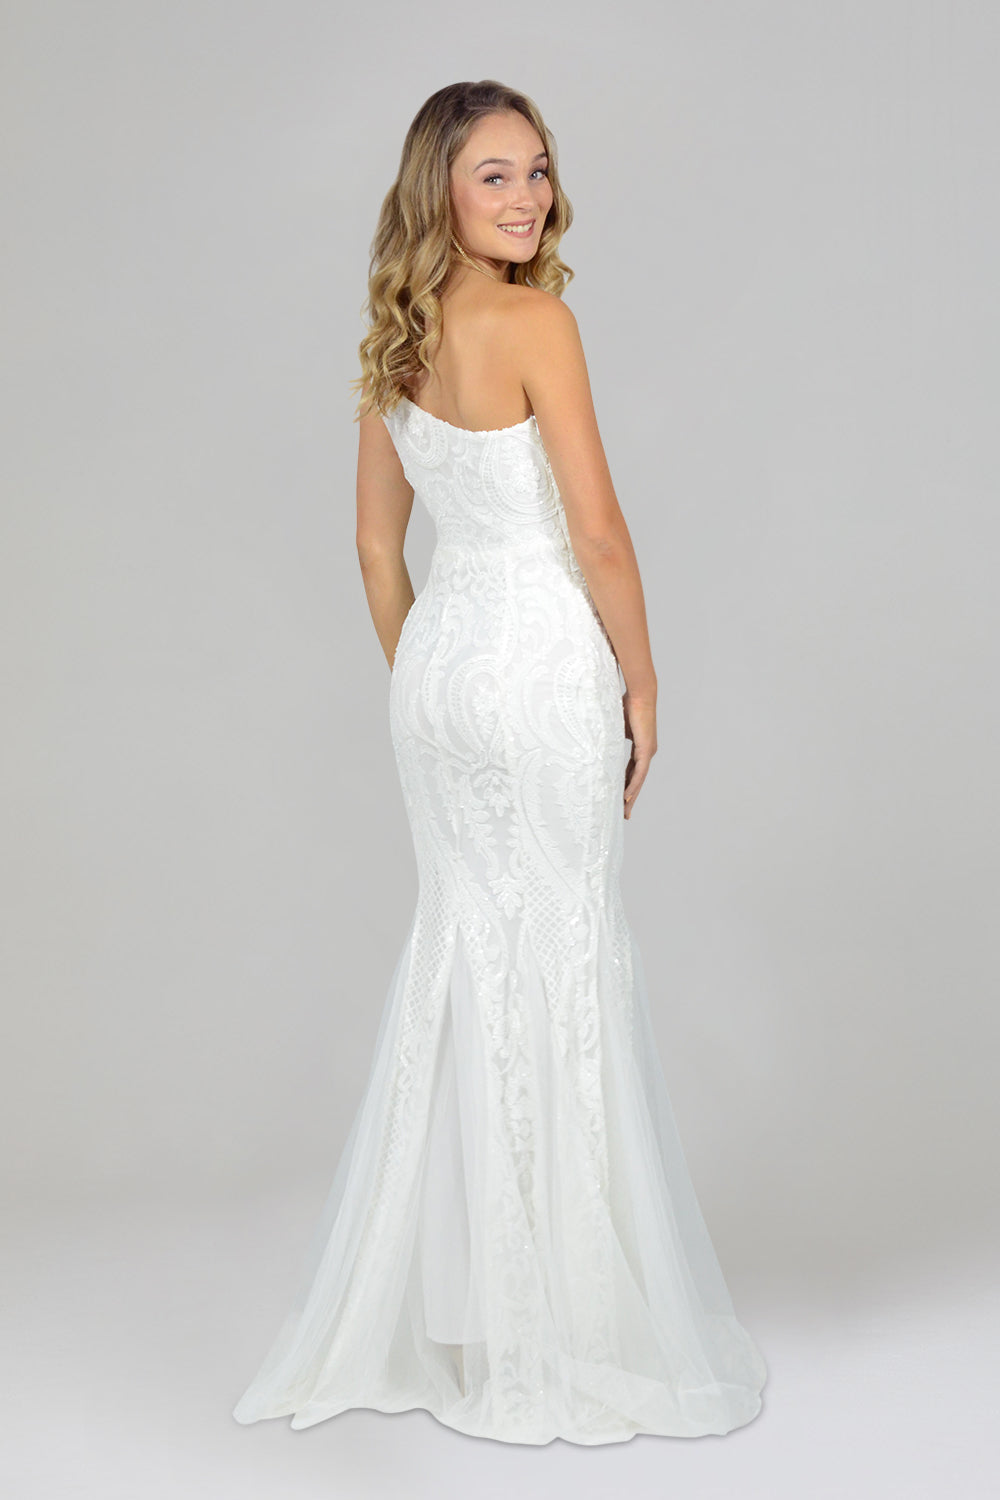 Custom made white sequin formal ball dresses Australia online Envious Bridal & Formal